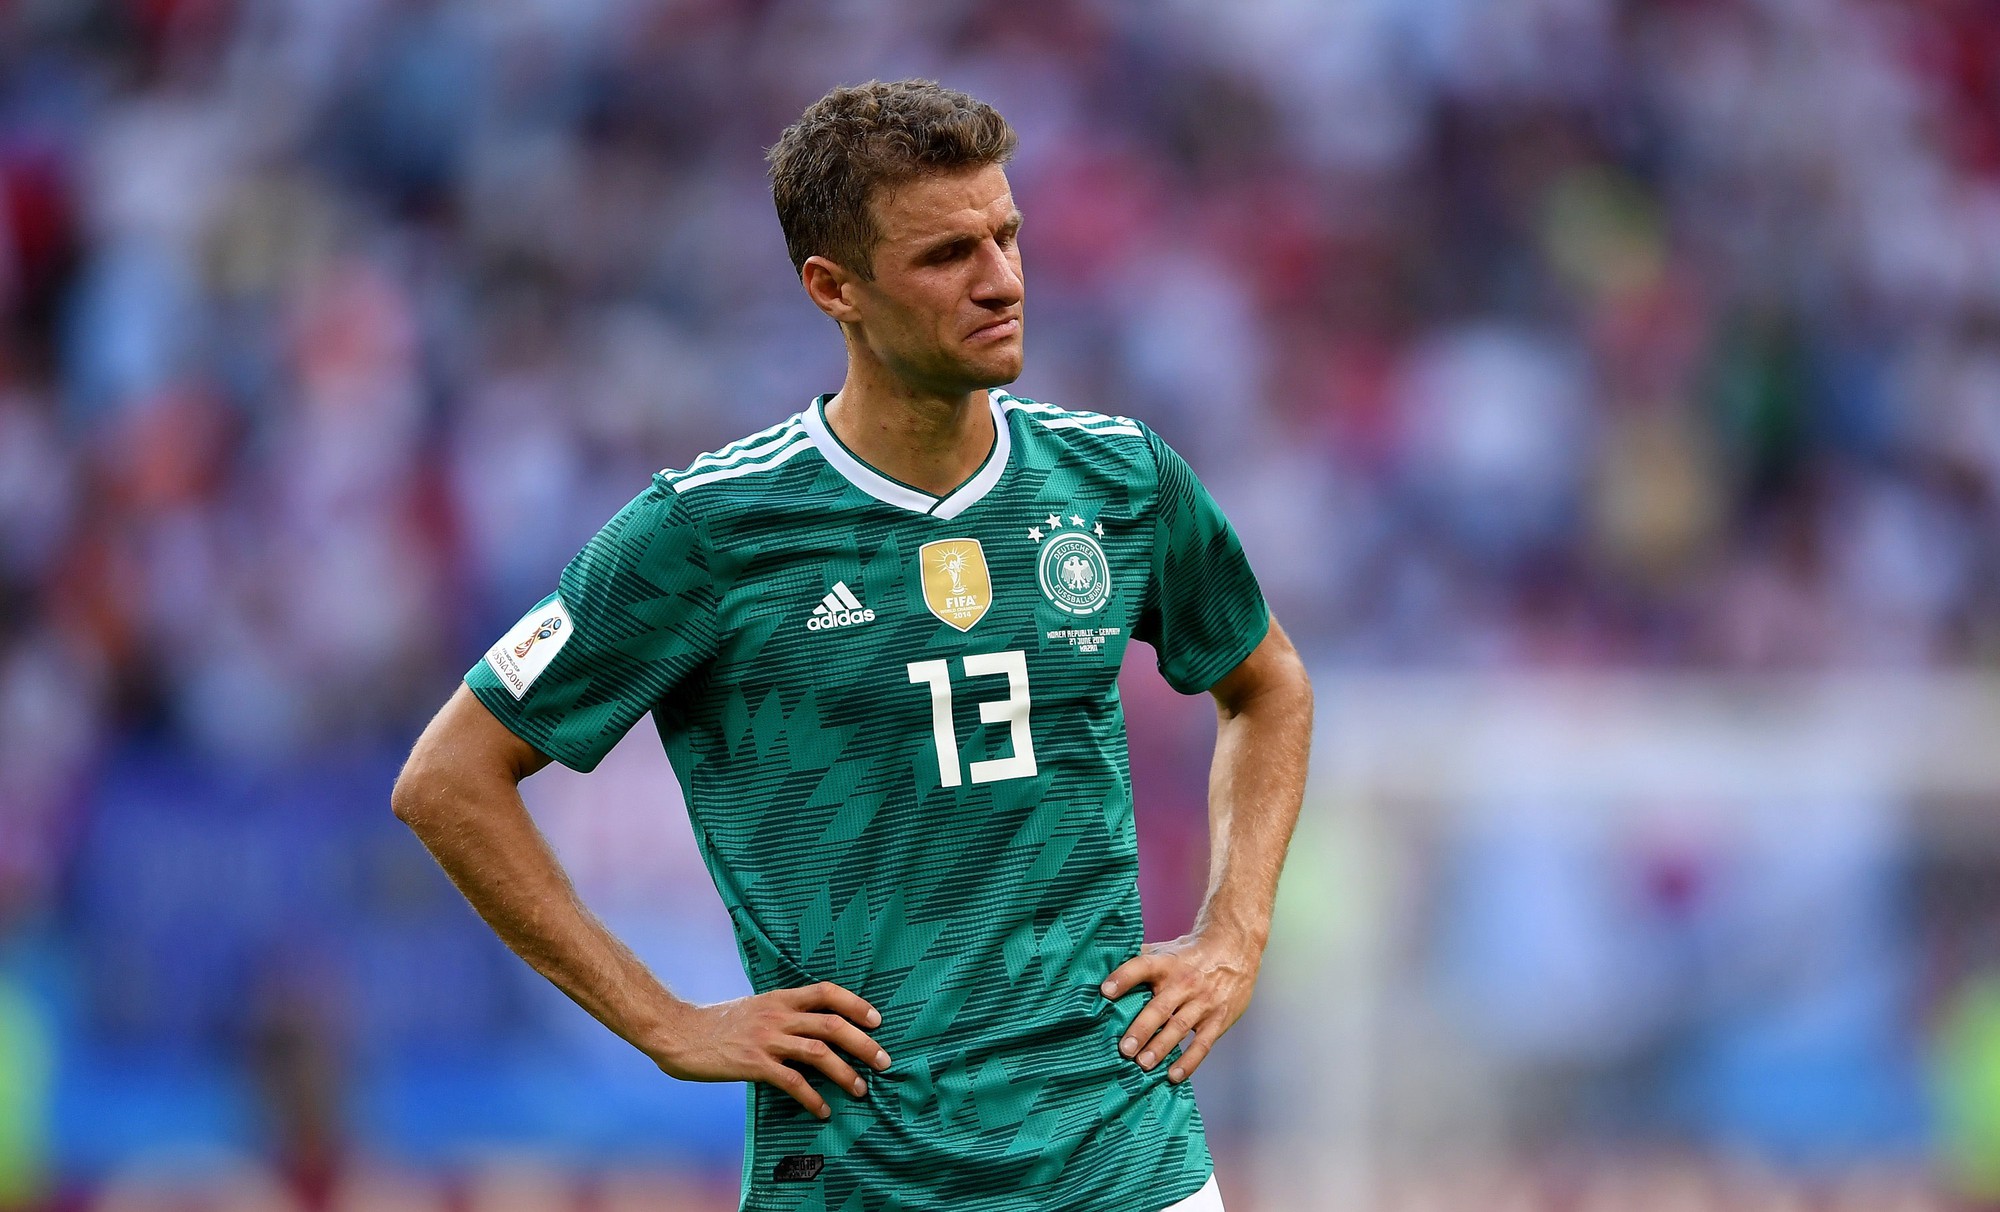 Hàn Quốc 2-0 Đức: Nhà vô địch bị loại sau trận cầu bạc nhược - Ảnh 1.